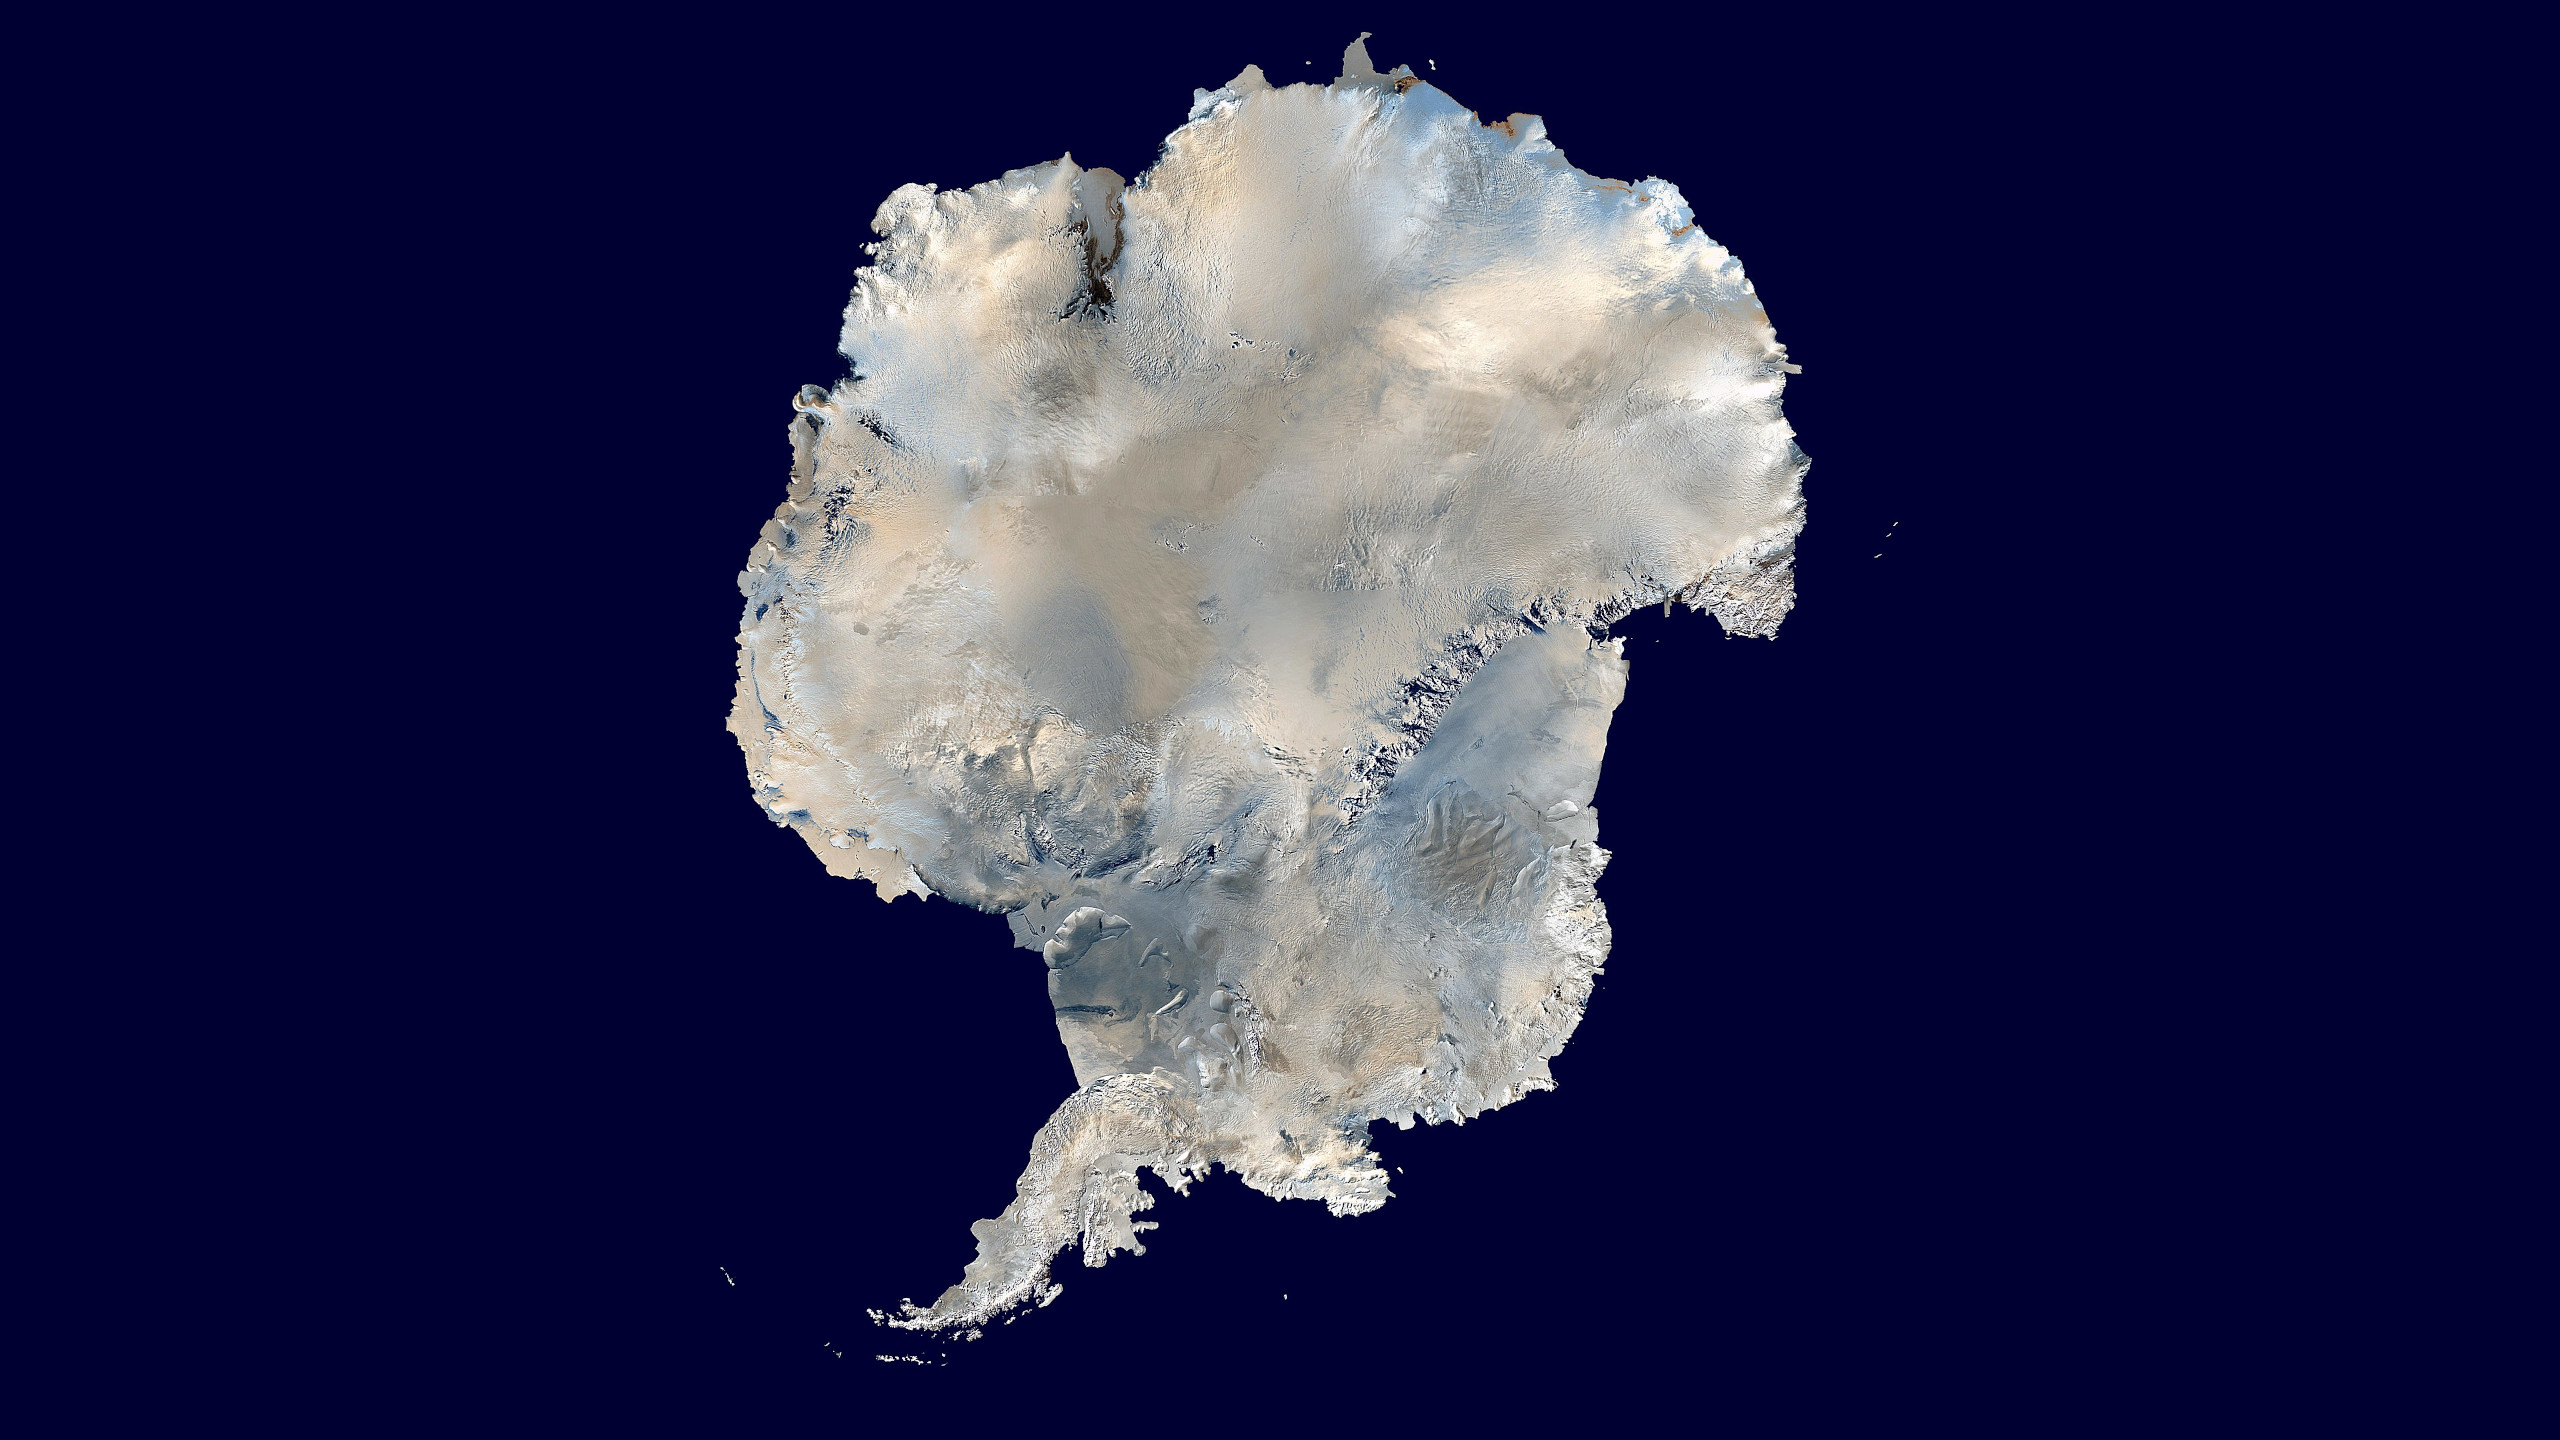 Las fotografías reales de la Antártida desde el espacio que arruinan el negacionismo